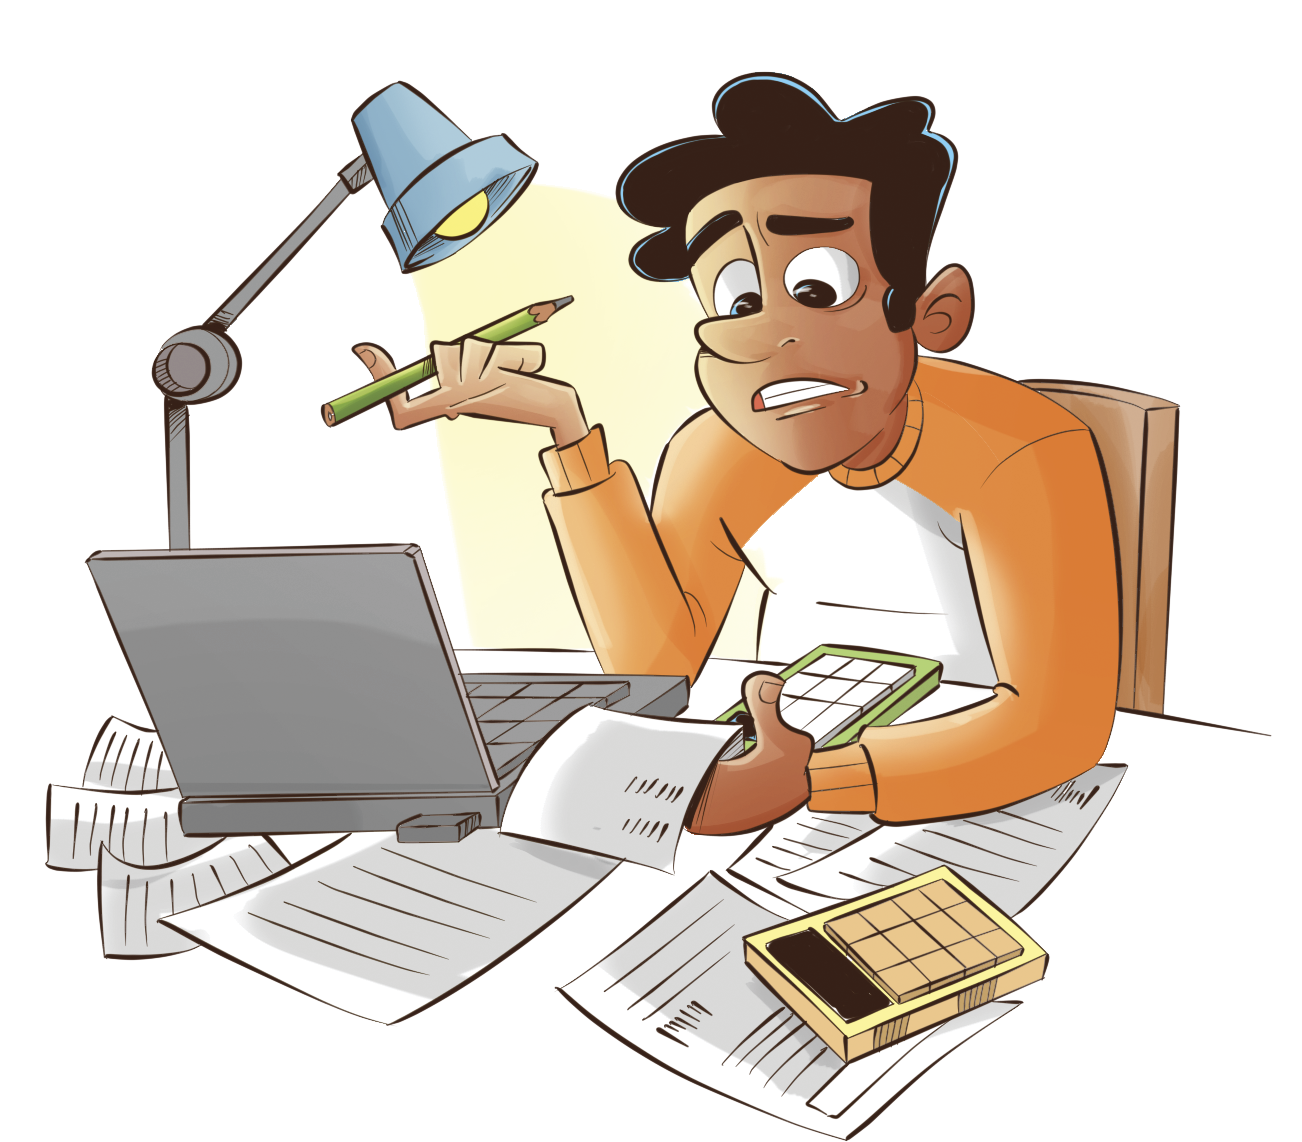 Ilustração. Homem de cabelo castanho, blusa laranja sentado de frente para uma mesa com luminária acesa, notebook, calculadora e papeis espalhados.